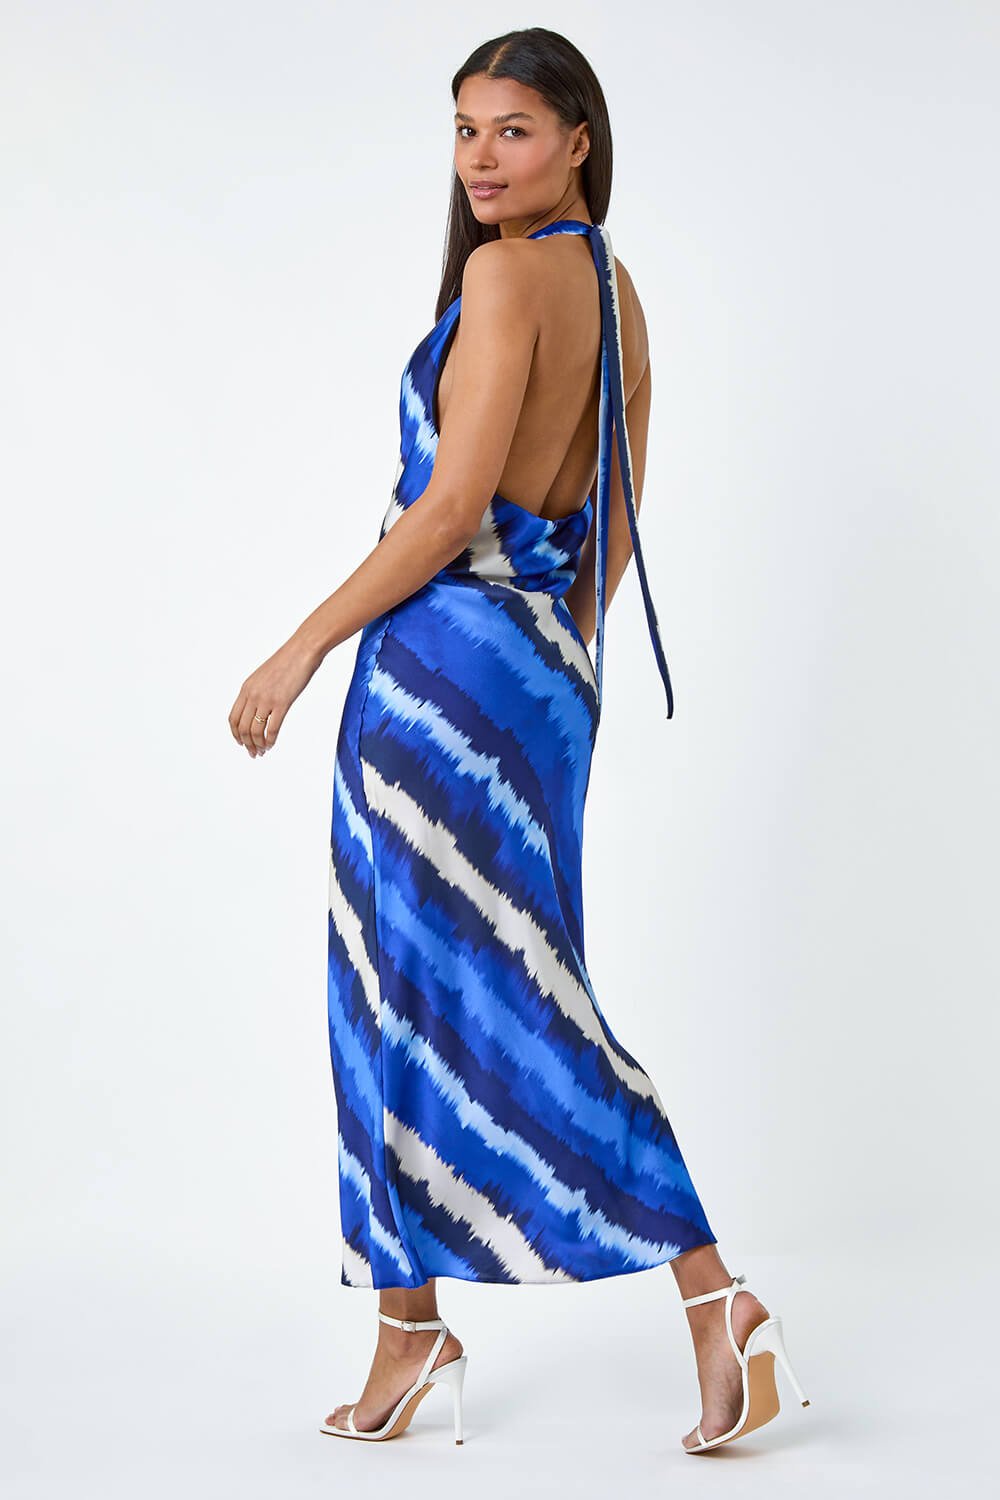 Royal Blue Stripe Print Satin Bias Cut Dress, Image 2 of 5